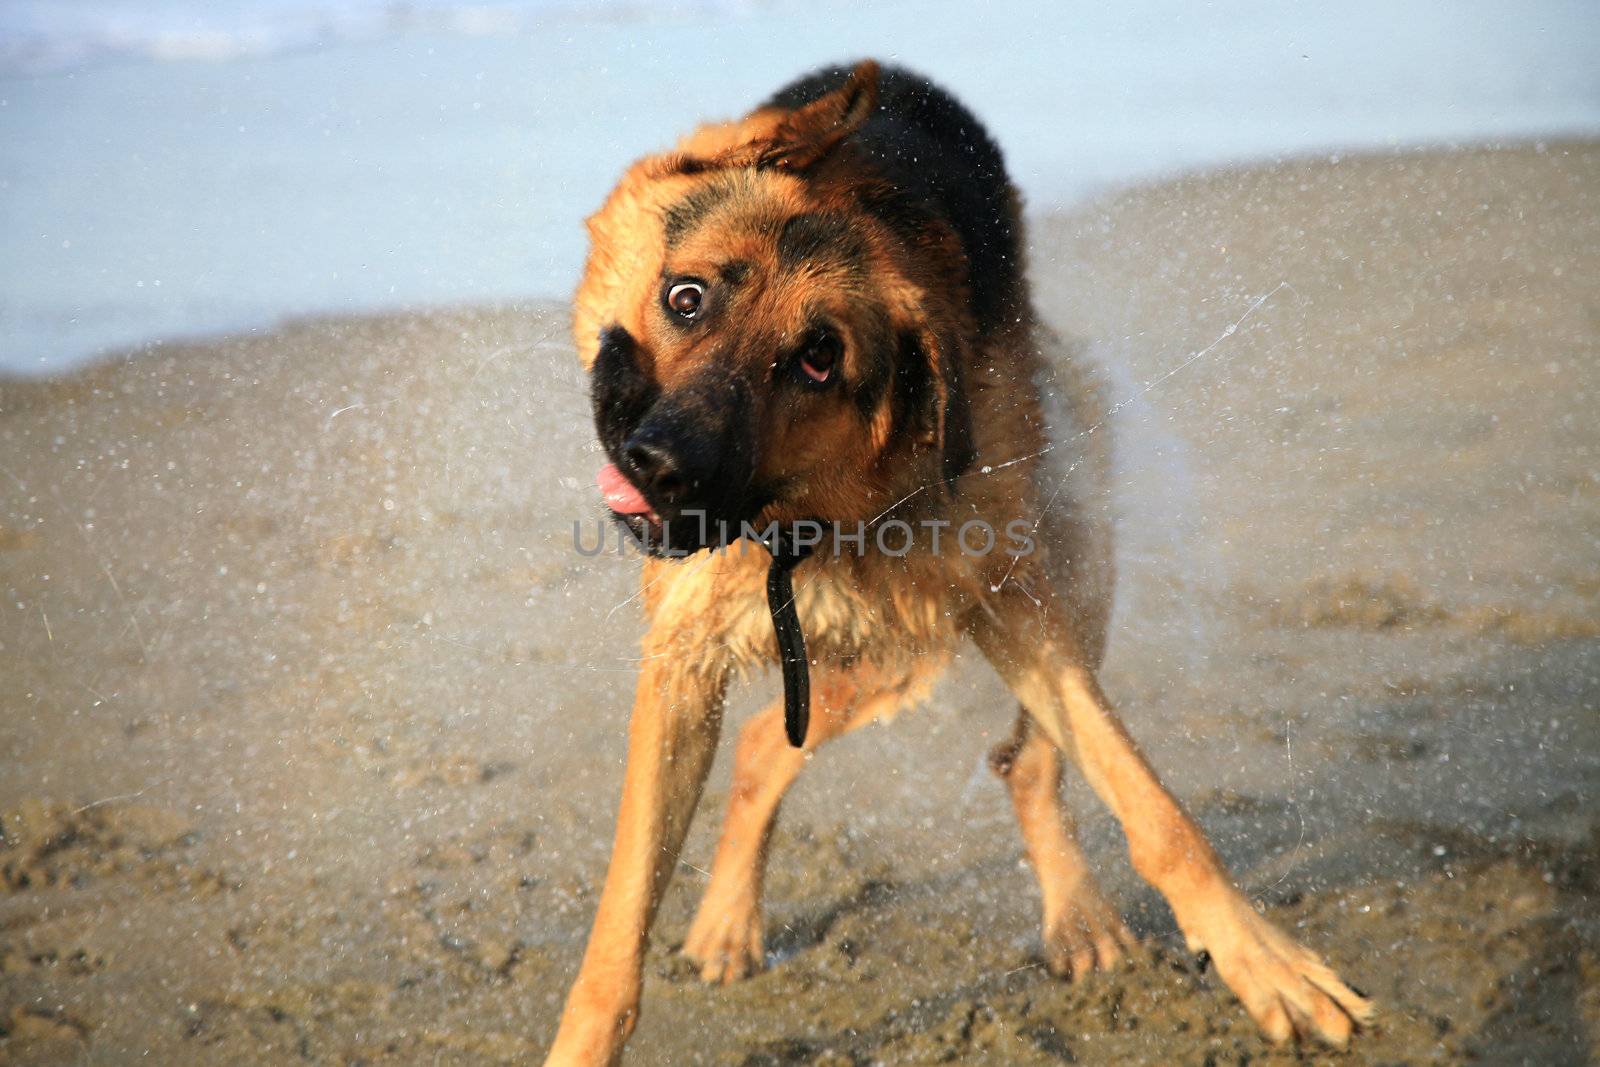 Shaking dog by fotokate